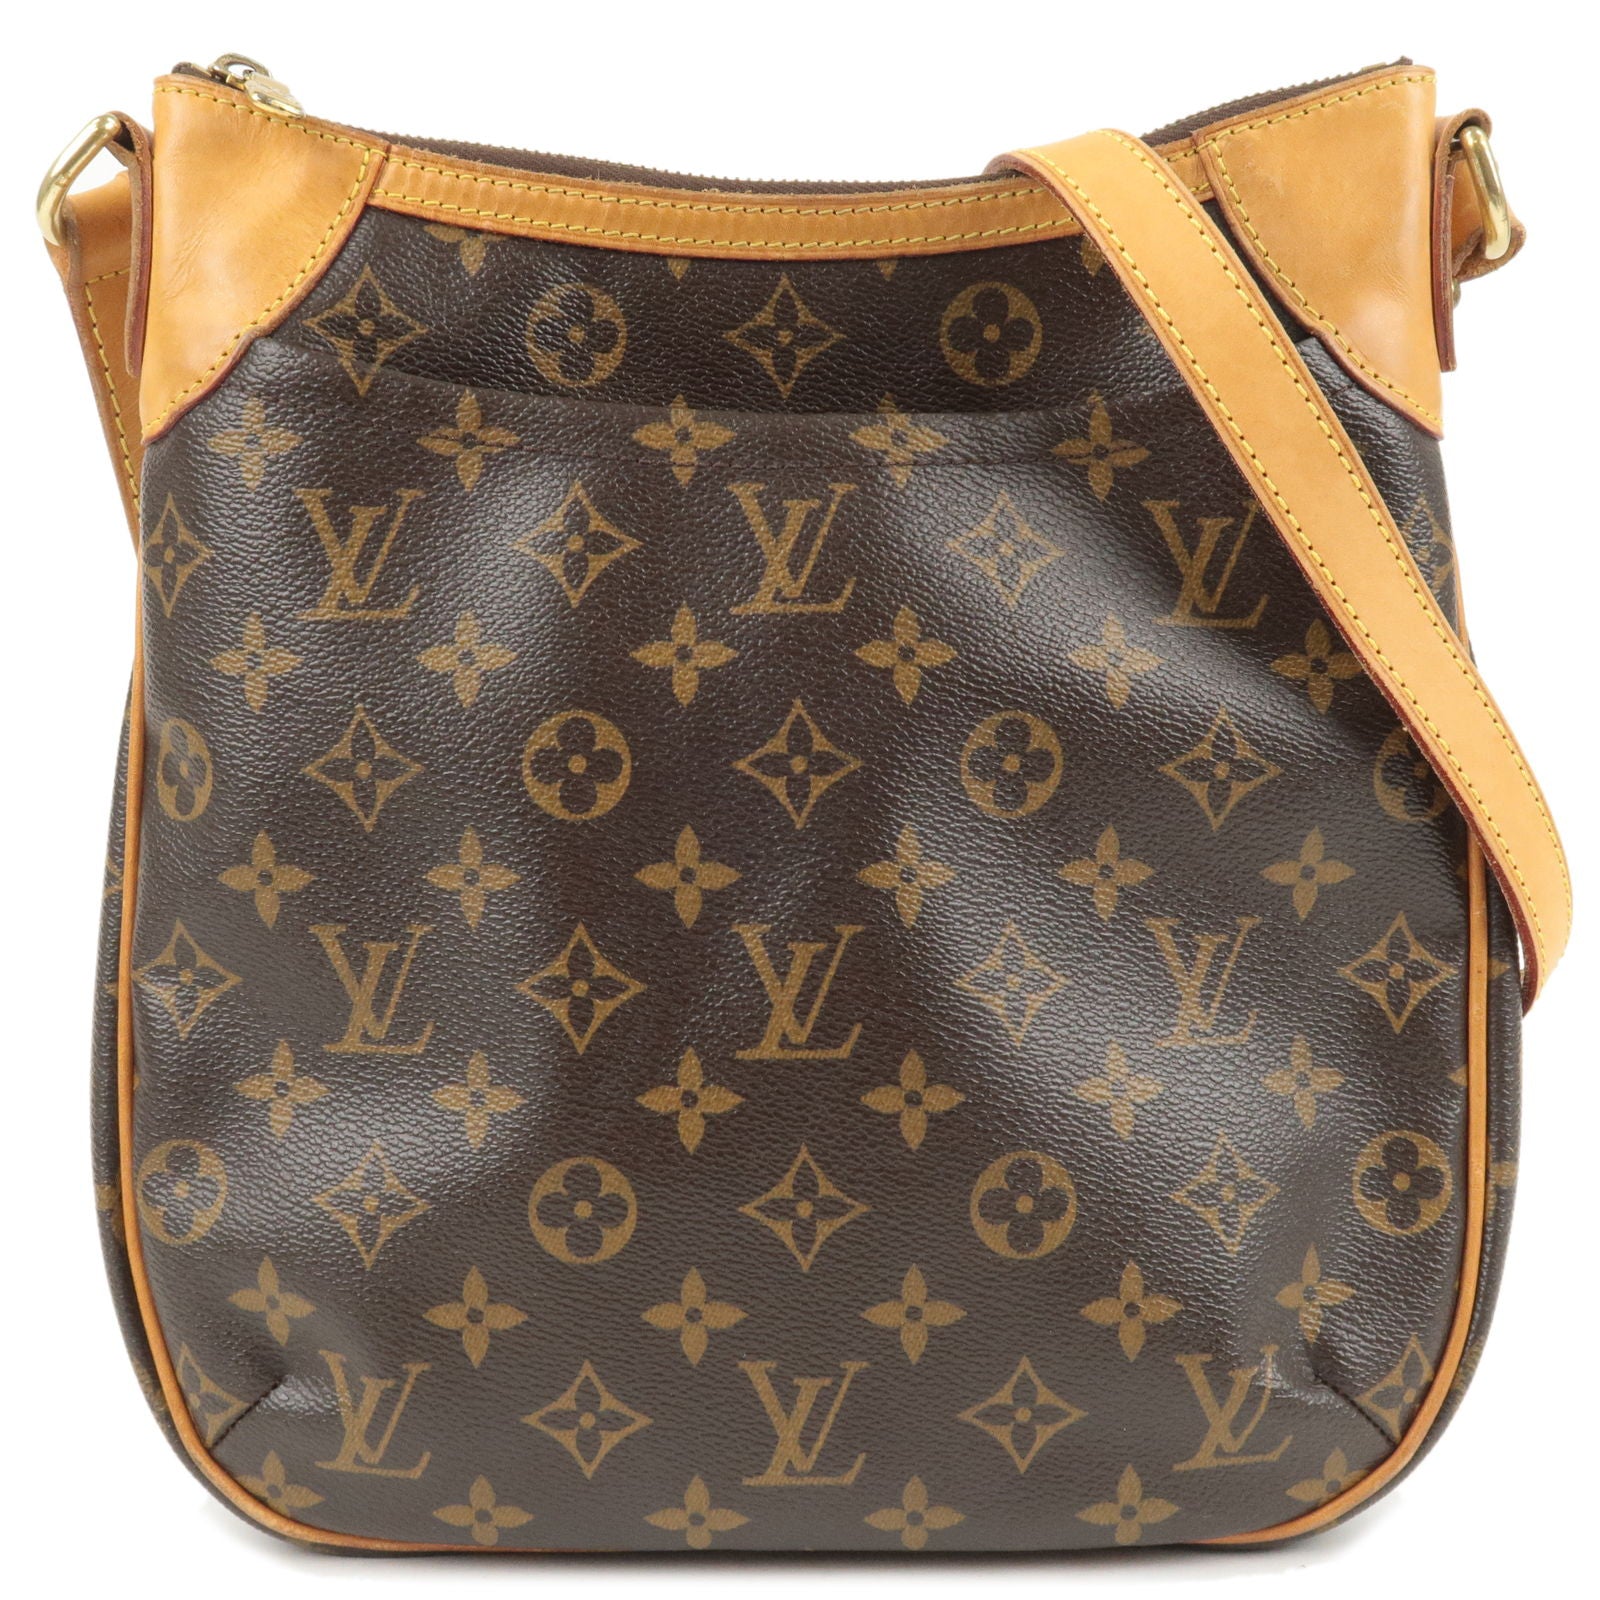 Louis Vuitton Monogram Canvas and Leather Trouville Bag Louis Vuitton